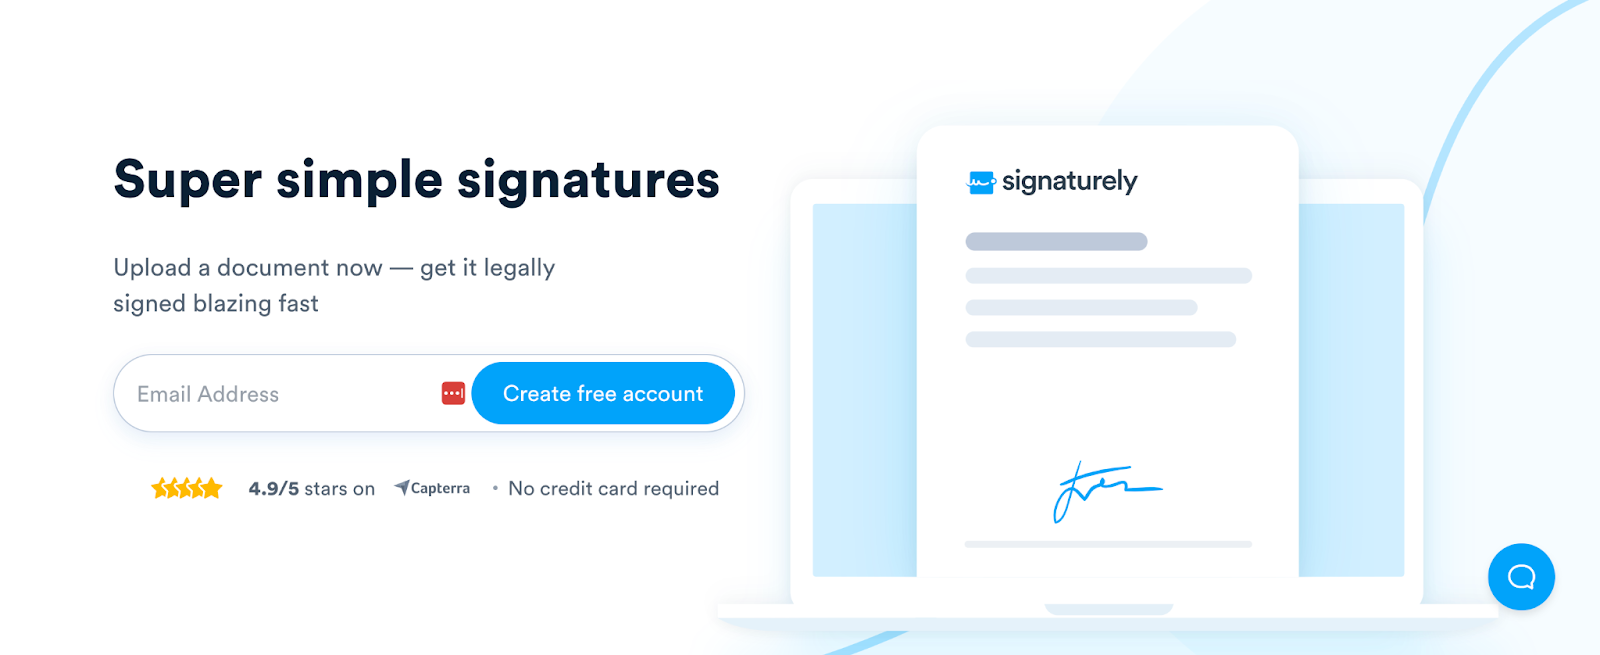 Signaturely HomePage - Super simple signatures